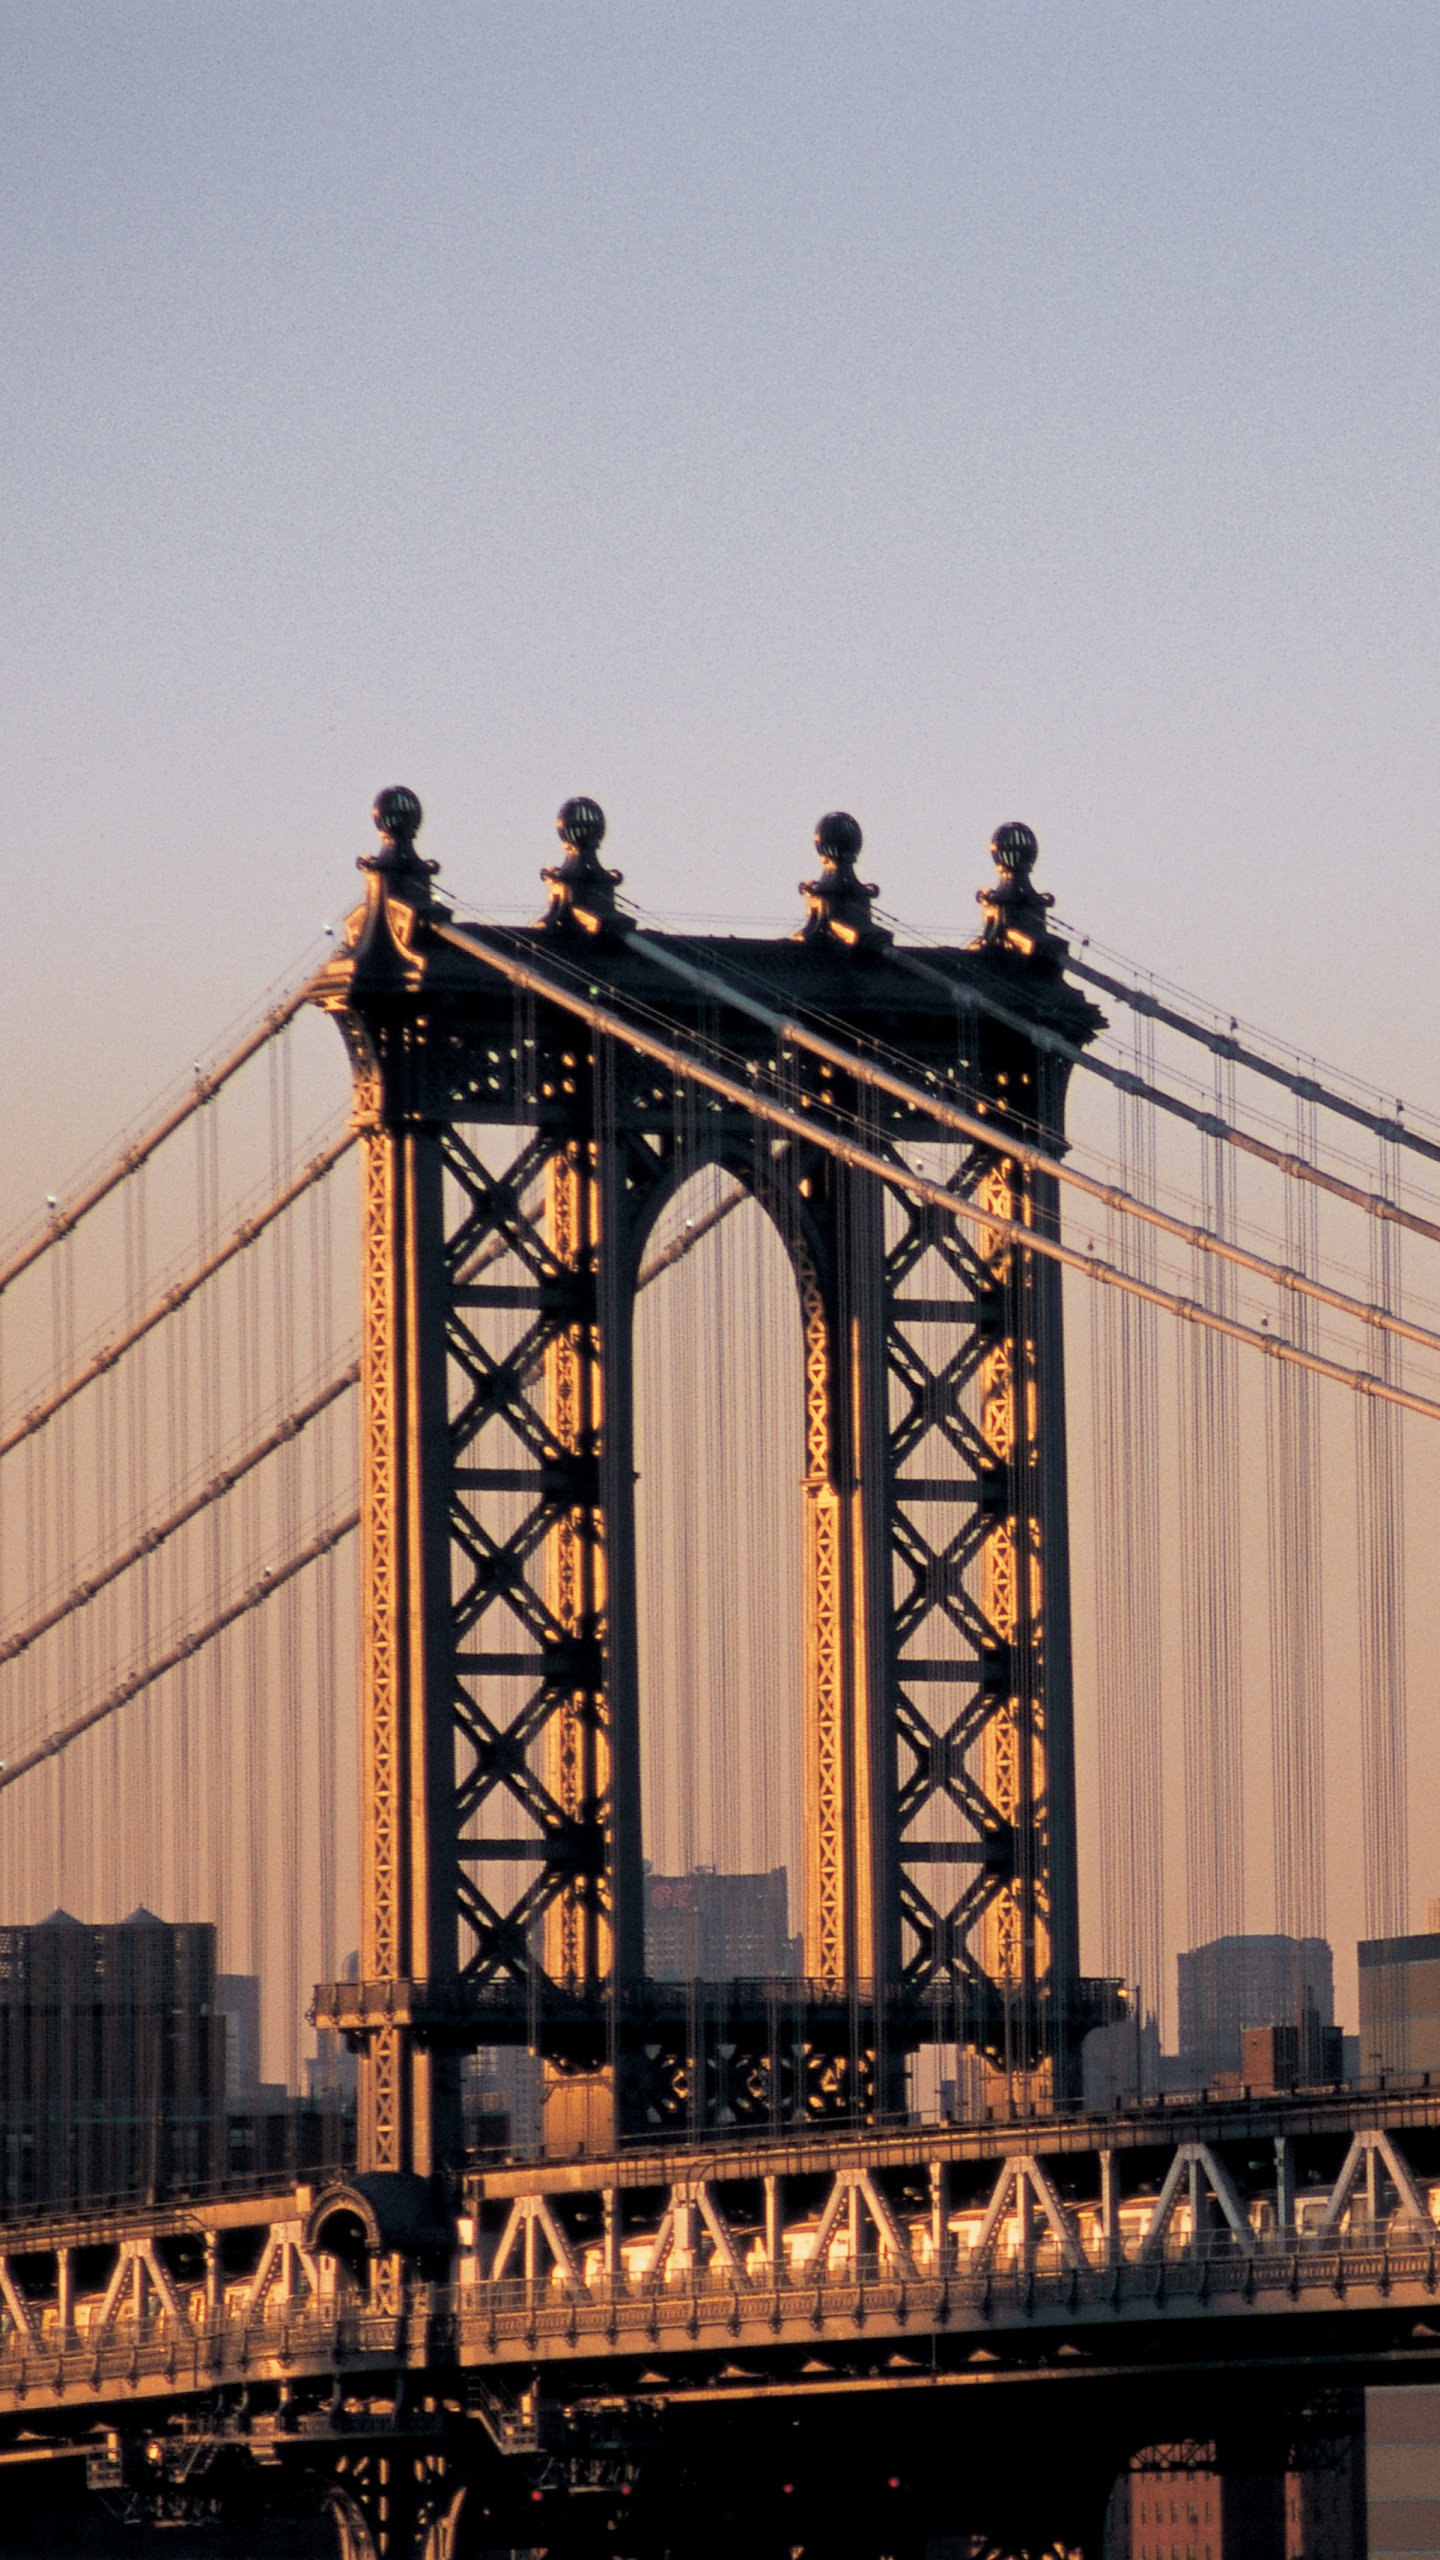 布鲁克林大桥, 曼哈顿大桥, 有线桥, 里程碑, 城市 壁纸 1440x2560 允许